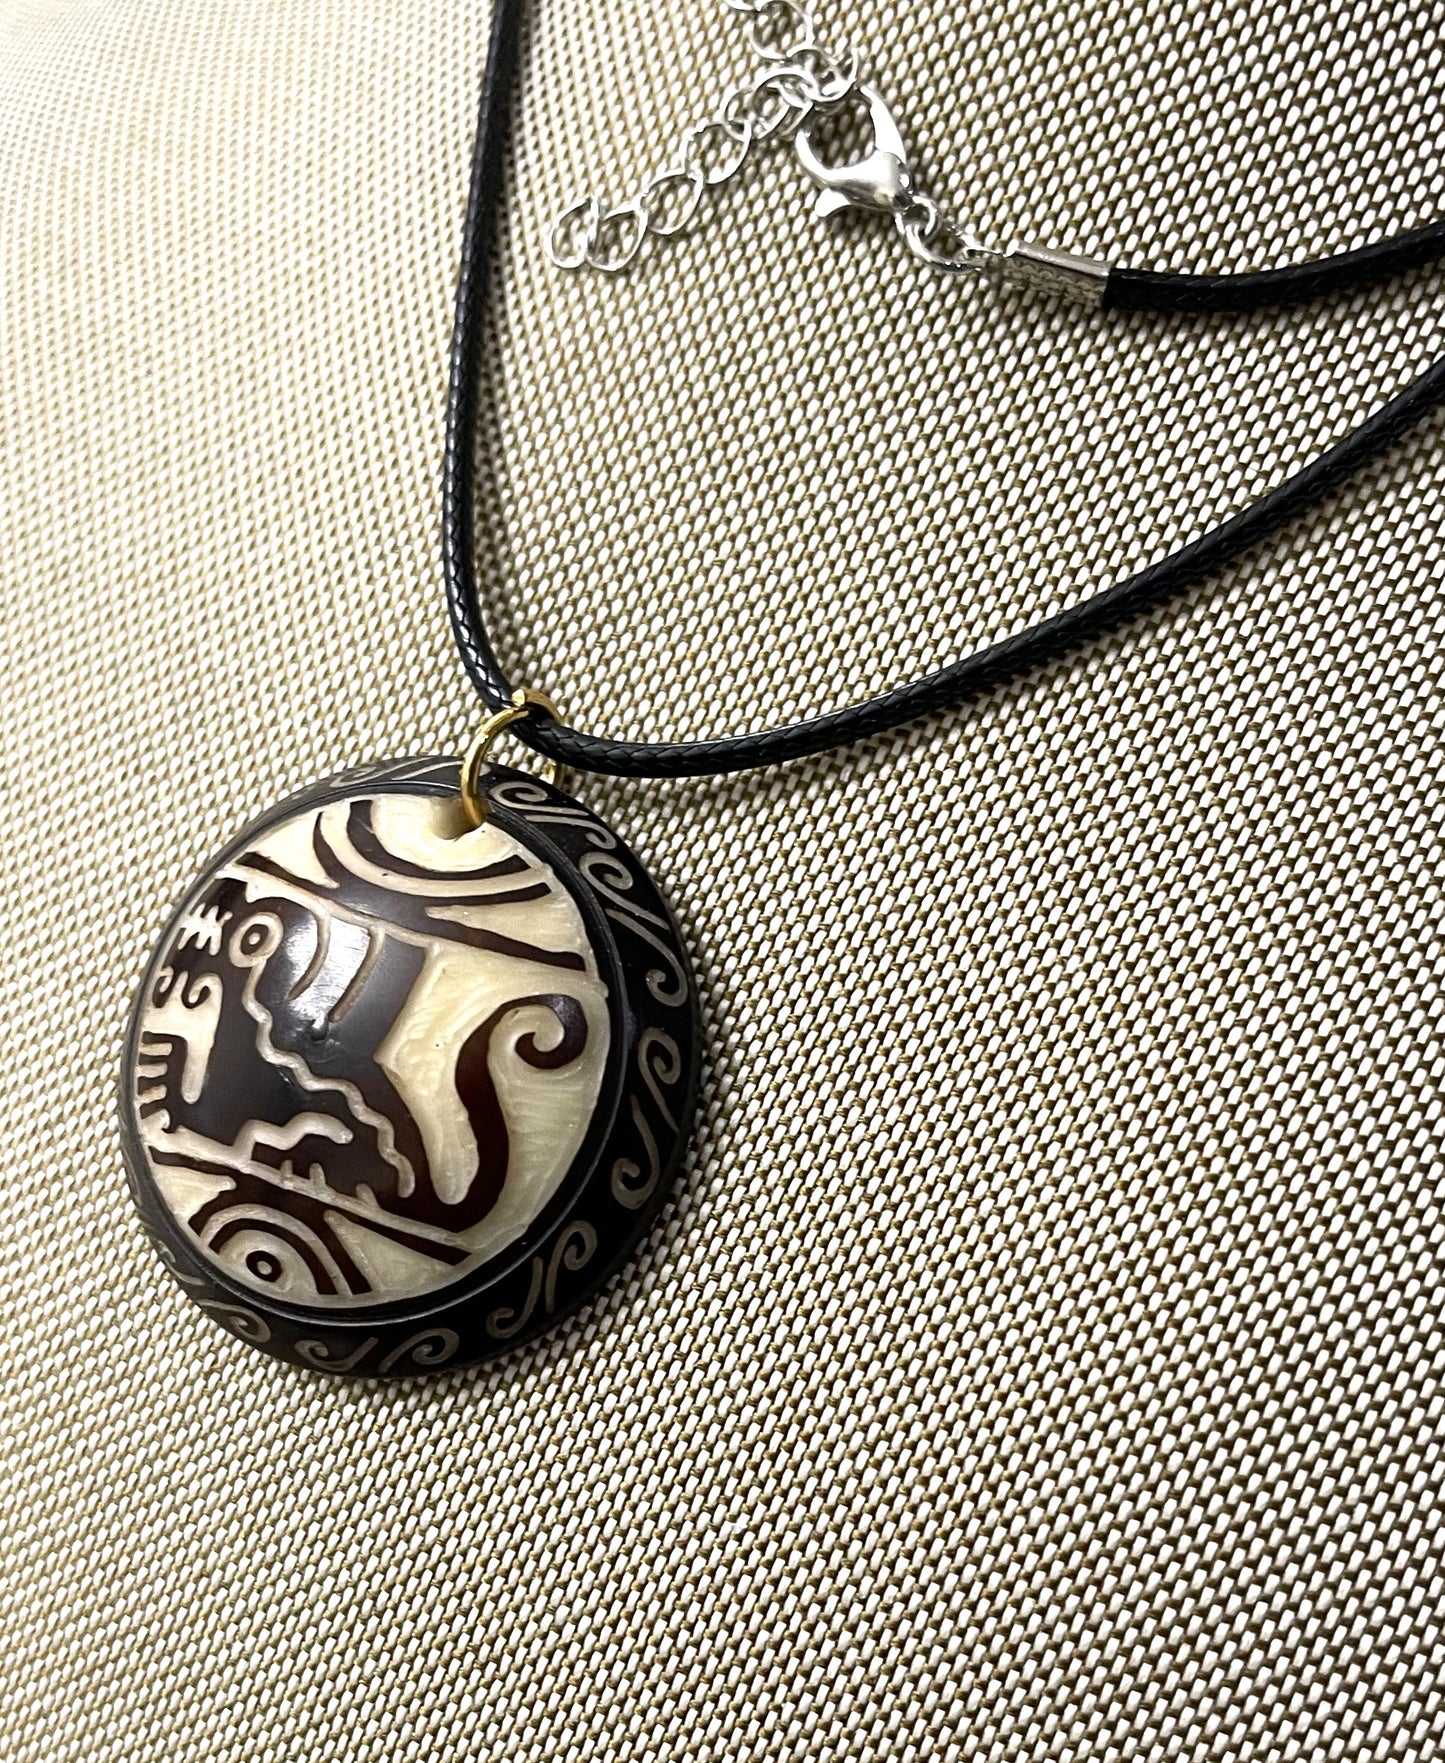 Inca Design Tagua Necklace Pendant Ecuador